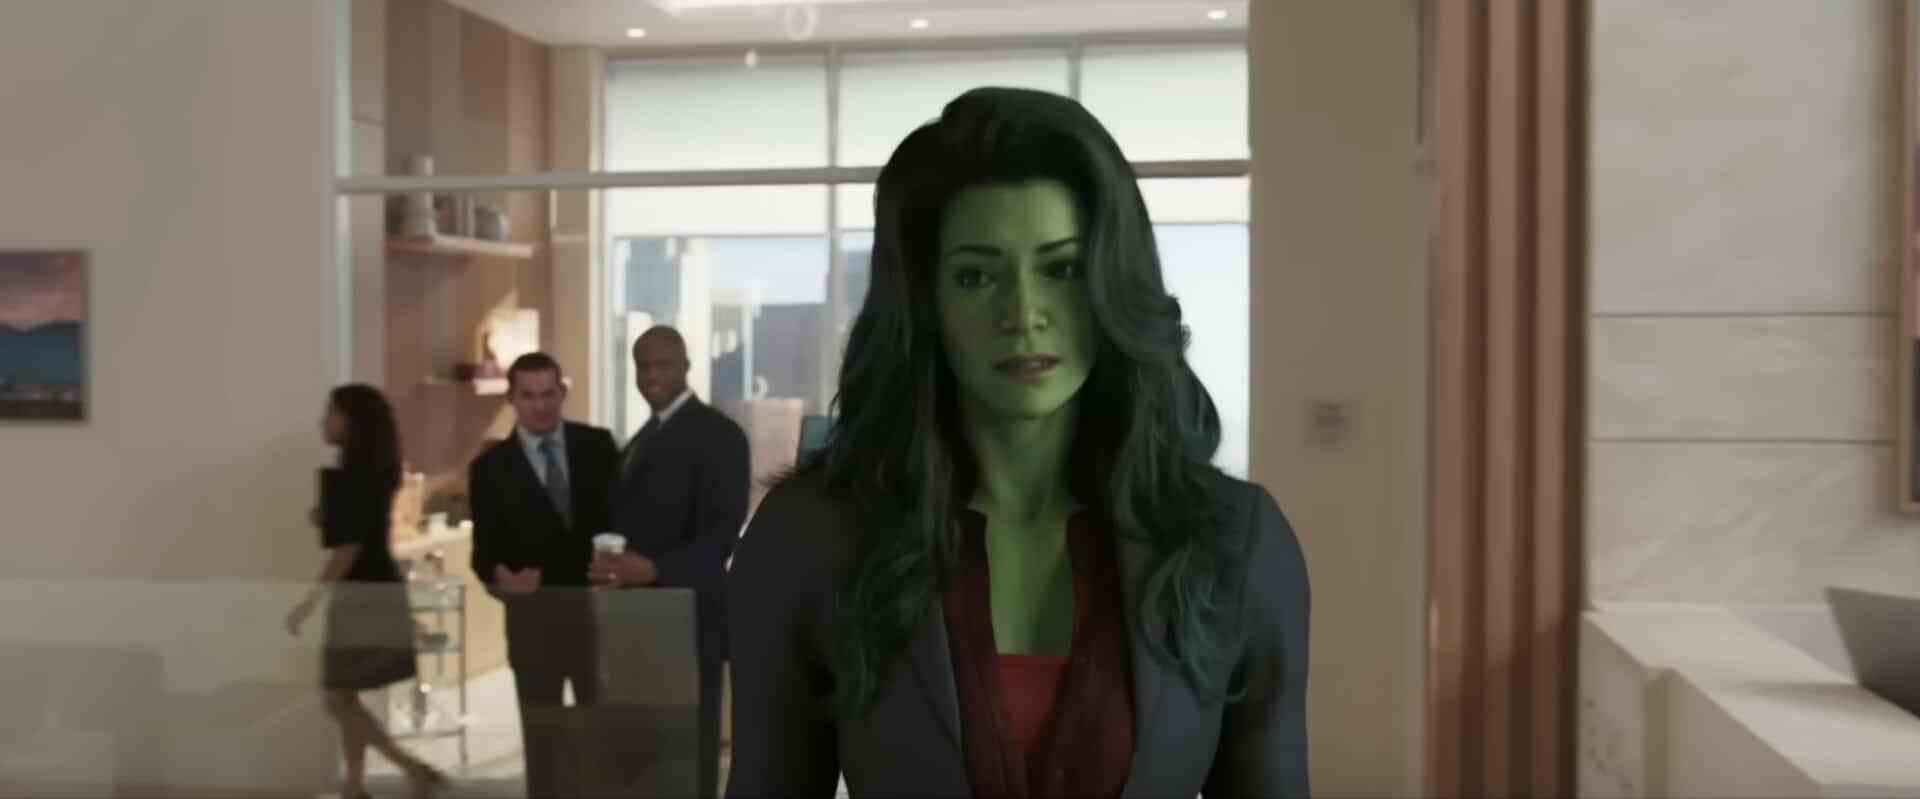 She-Hulk-Trailer CGI Jennifer Walters Qualitätsprobleme deuten auf Probleme bei der Behandlung von MCU Marvel Cinematic Universe mit visuellen Geräten und visuellen Effekten hin